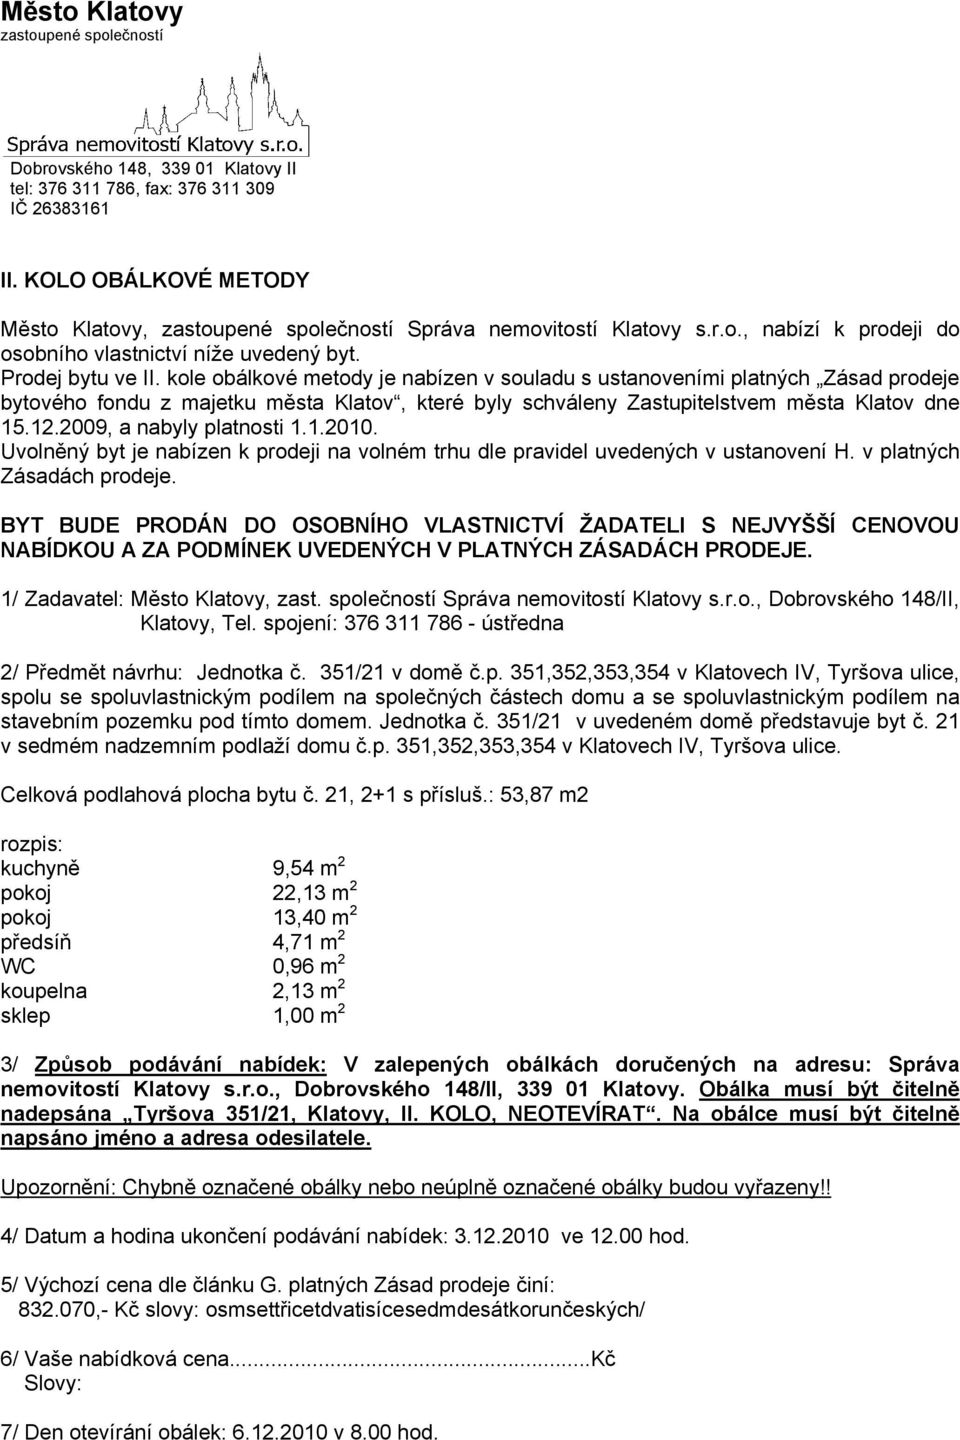 kole obálkové metody je nabízen v souladu s ustanoveními platných Zásad prodeje bytového fondu z majetku města Klatov, které byly schváleny Zastupitelstvem města Klatov dne 15.12.